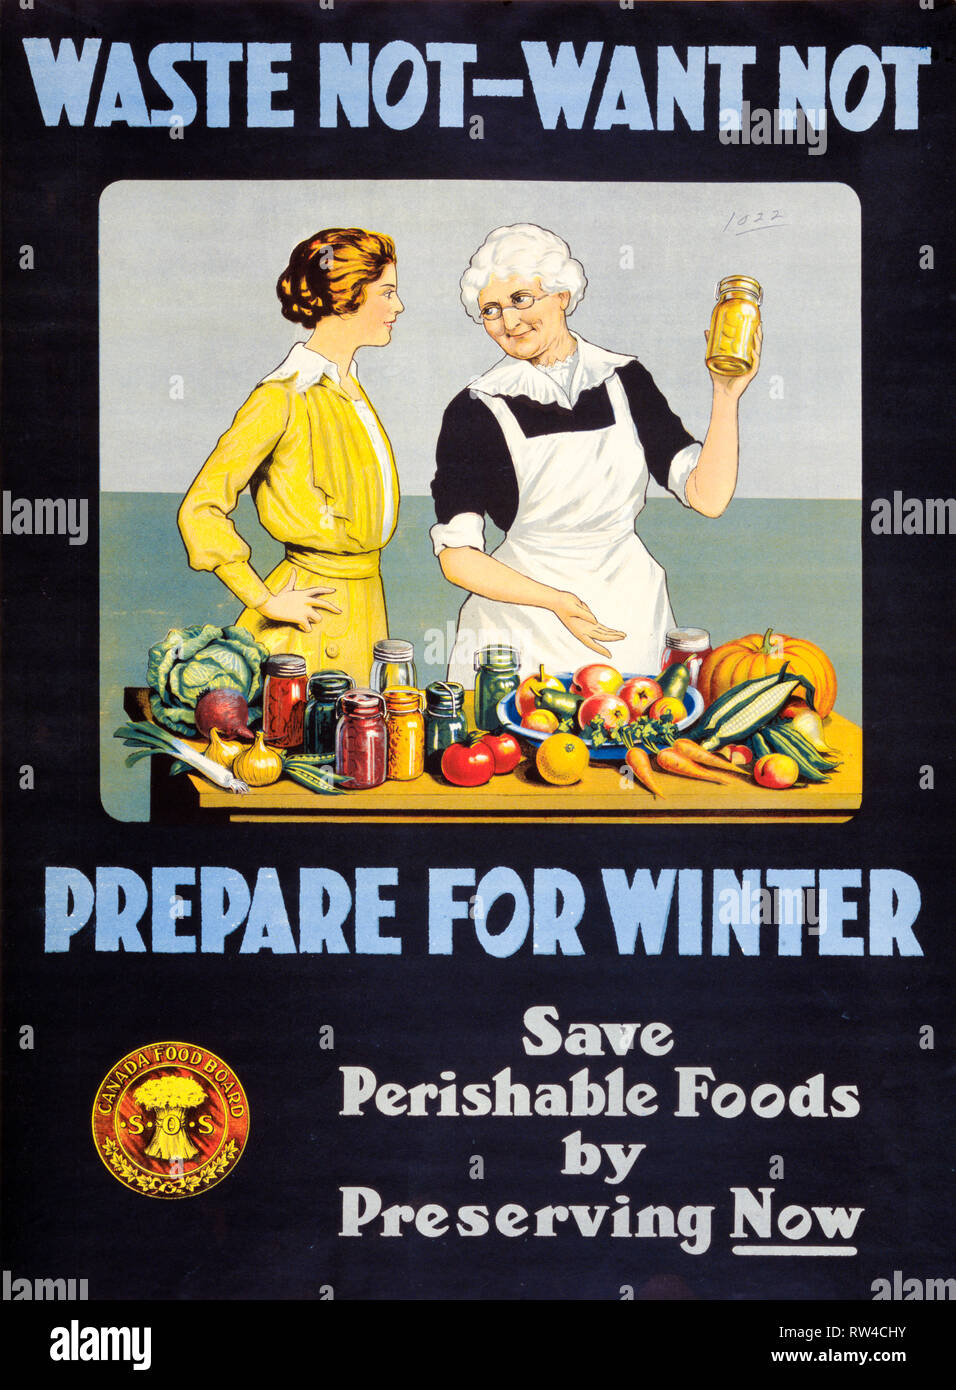 1 canadien de la Première Guerre mondiale, l'affiche de "Déchets :. Se préparer pour l'hiver. Enregistrer les aliments périssables en préservant maintenant.', ch. 1914 - 1918, le Conseil de l'alimentation du Canada Banque D'Images